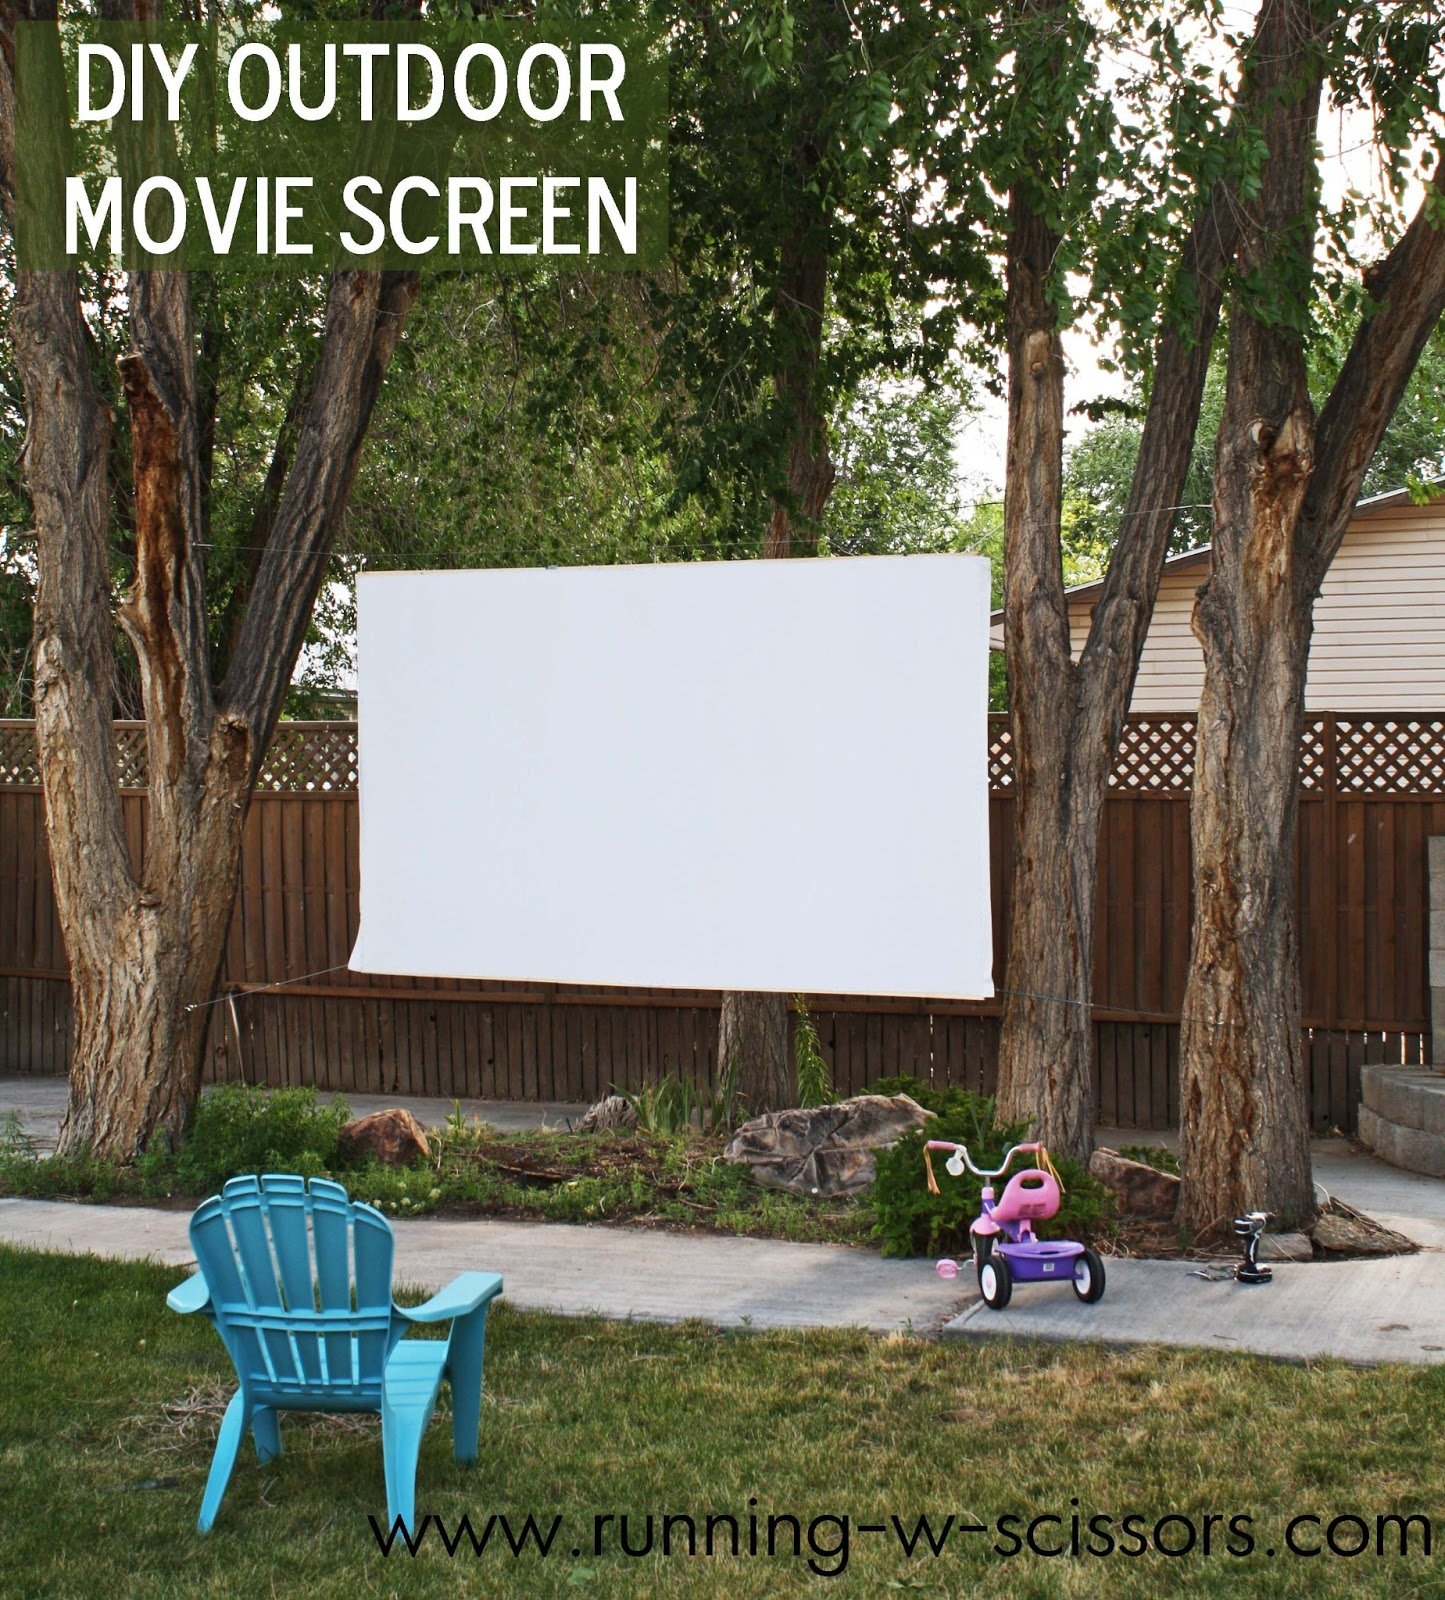 outdoor screen